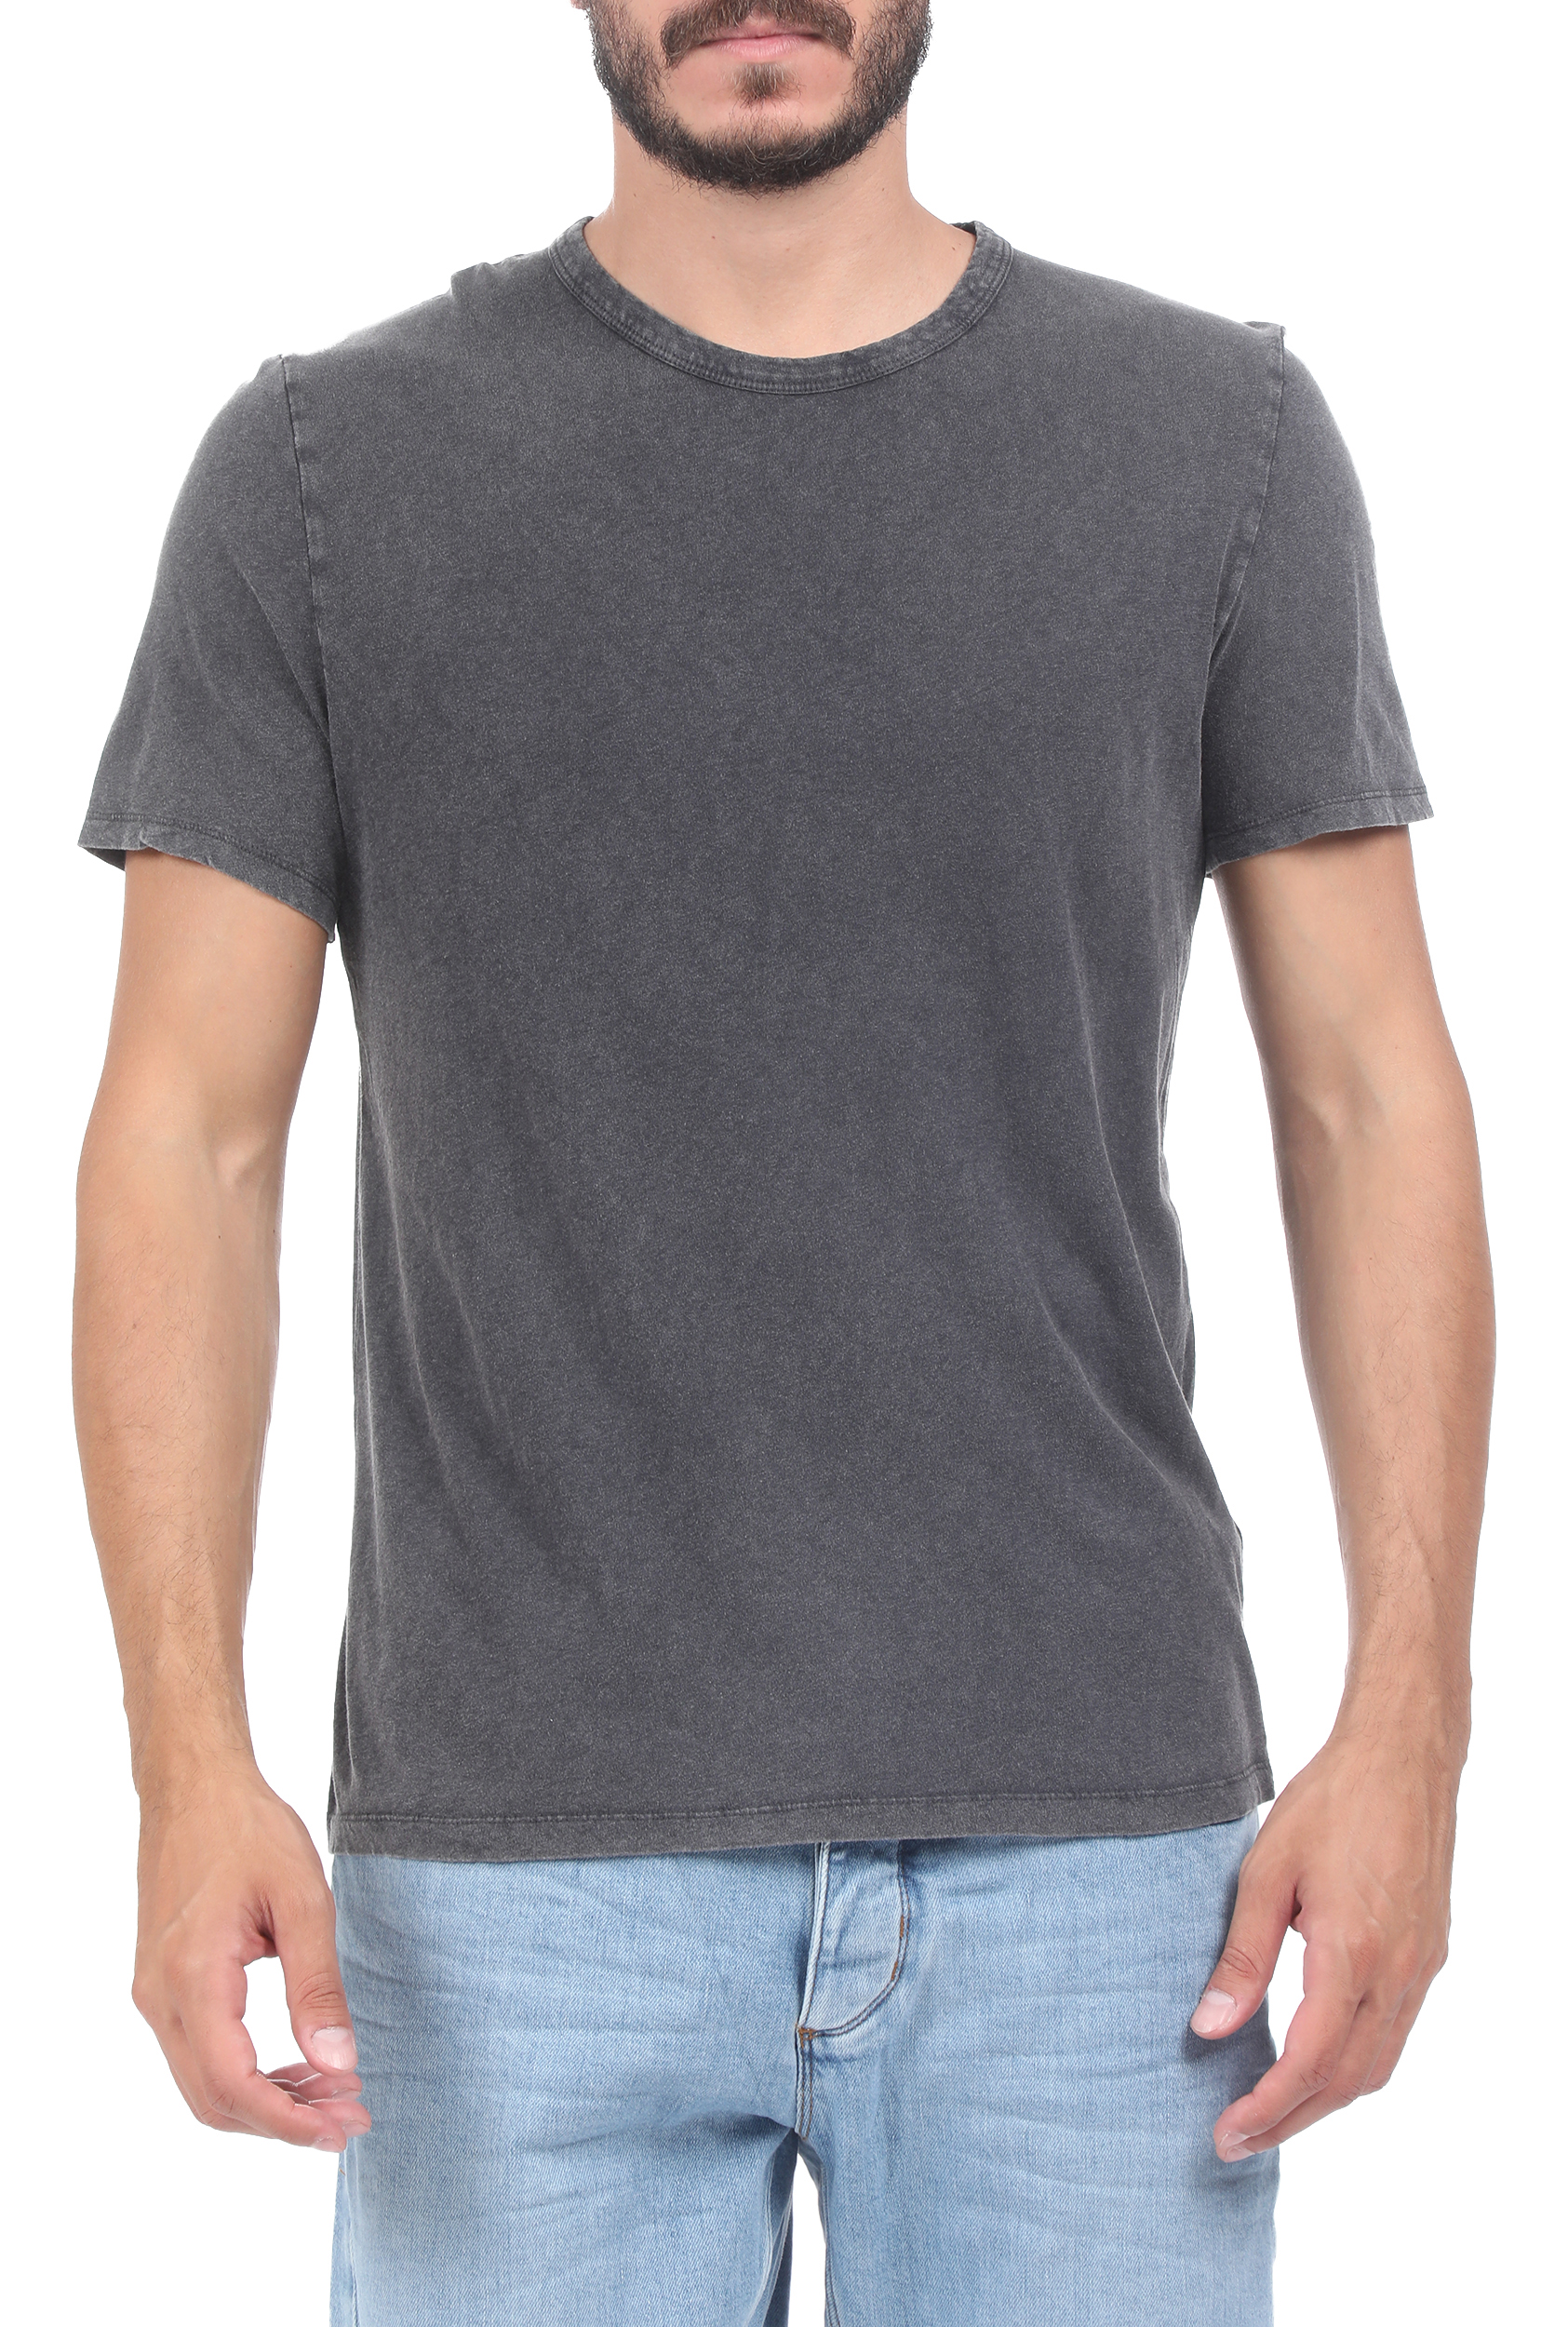 Ανδρικά/Ρούχα/Μπλούζες/Κοντομάνικες AMERICAN VINTAGE - Ανδρικό t-shirt AMERICAN VINTAGE ανθρακί